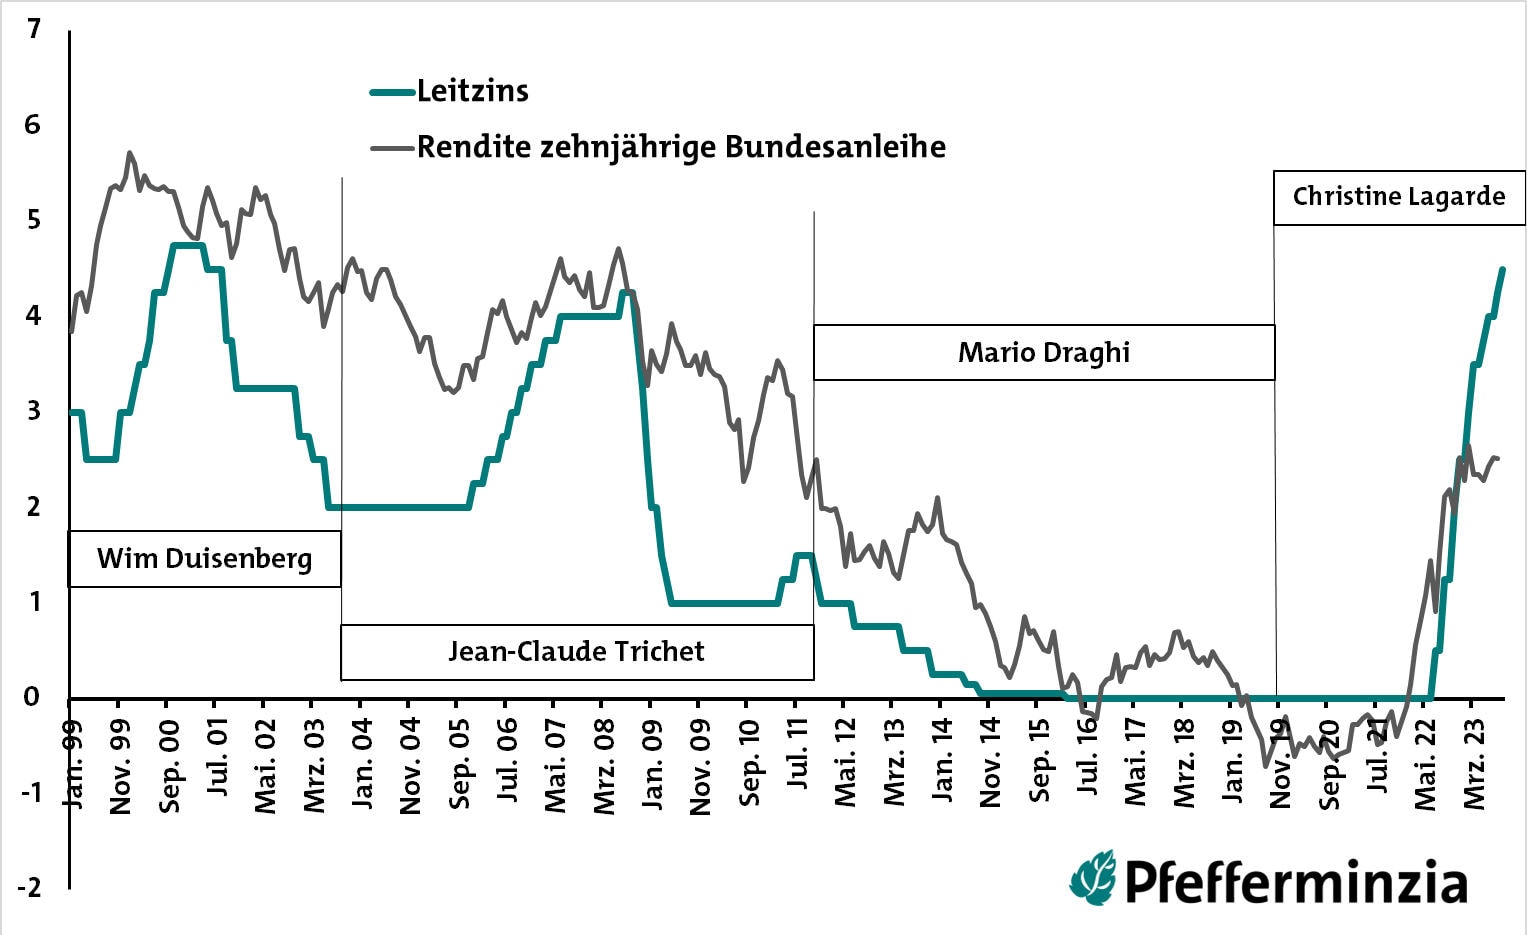 EZB-Leitzins, Rendite der zehnjährigen Bundesanleihe und EZB-Präsidenten seit Anfang 1999 (Quelle: Bundesbank, Destatis)